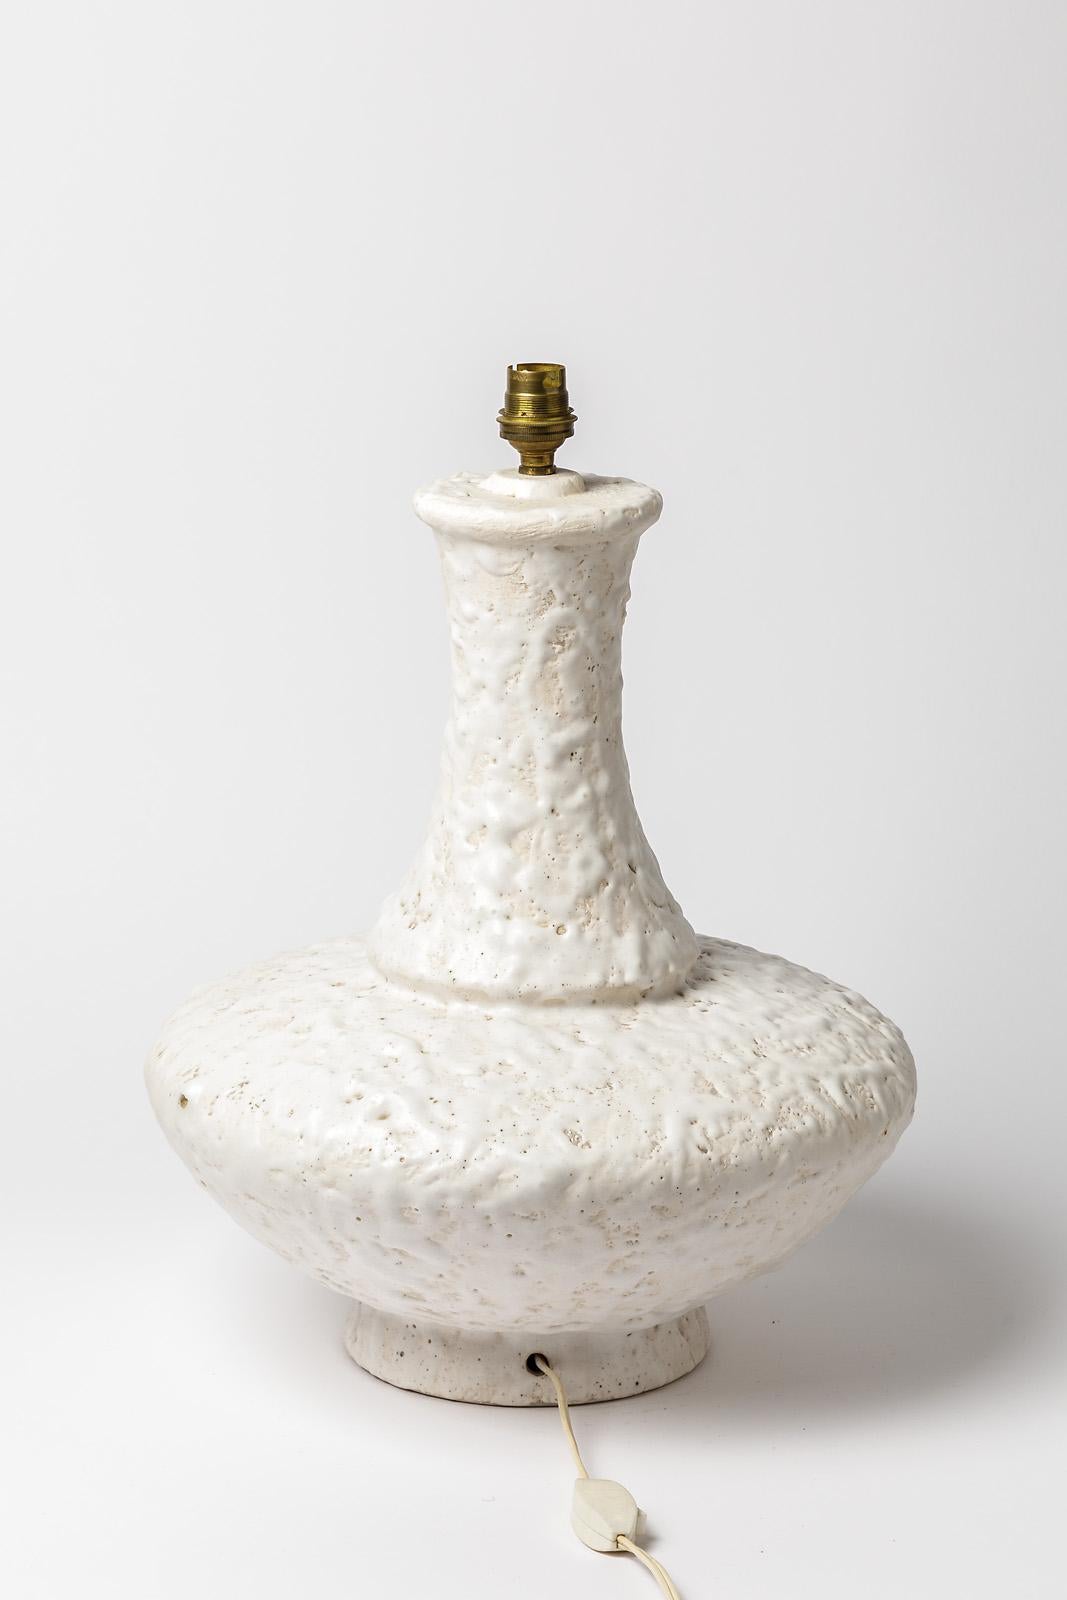 Lampe de table en céramique française, vers 1960

Elegante et grande lampe de table en céramique blanche 

Glaçure céramique blanche abstraite

Condition originale parfaite.

Dimensions de la céramique : hauteur 39 cm, largeur 32 cm
Avec